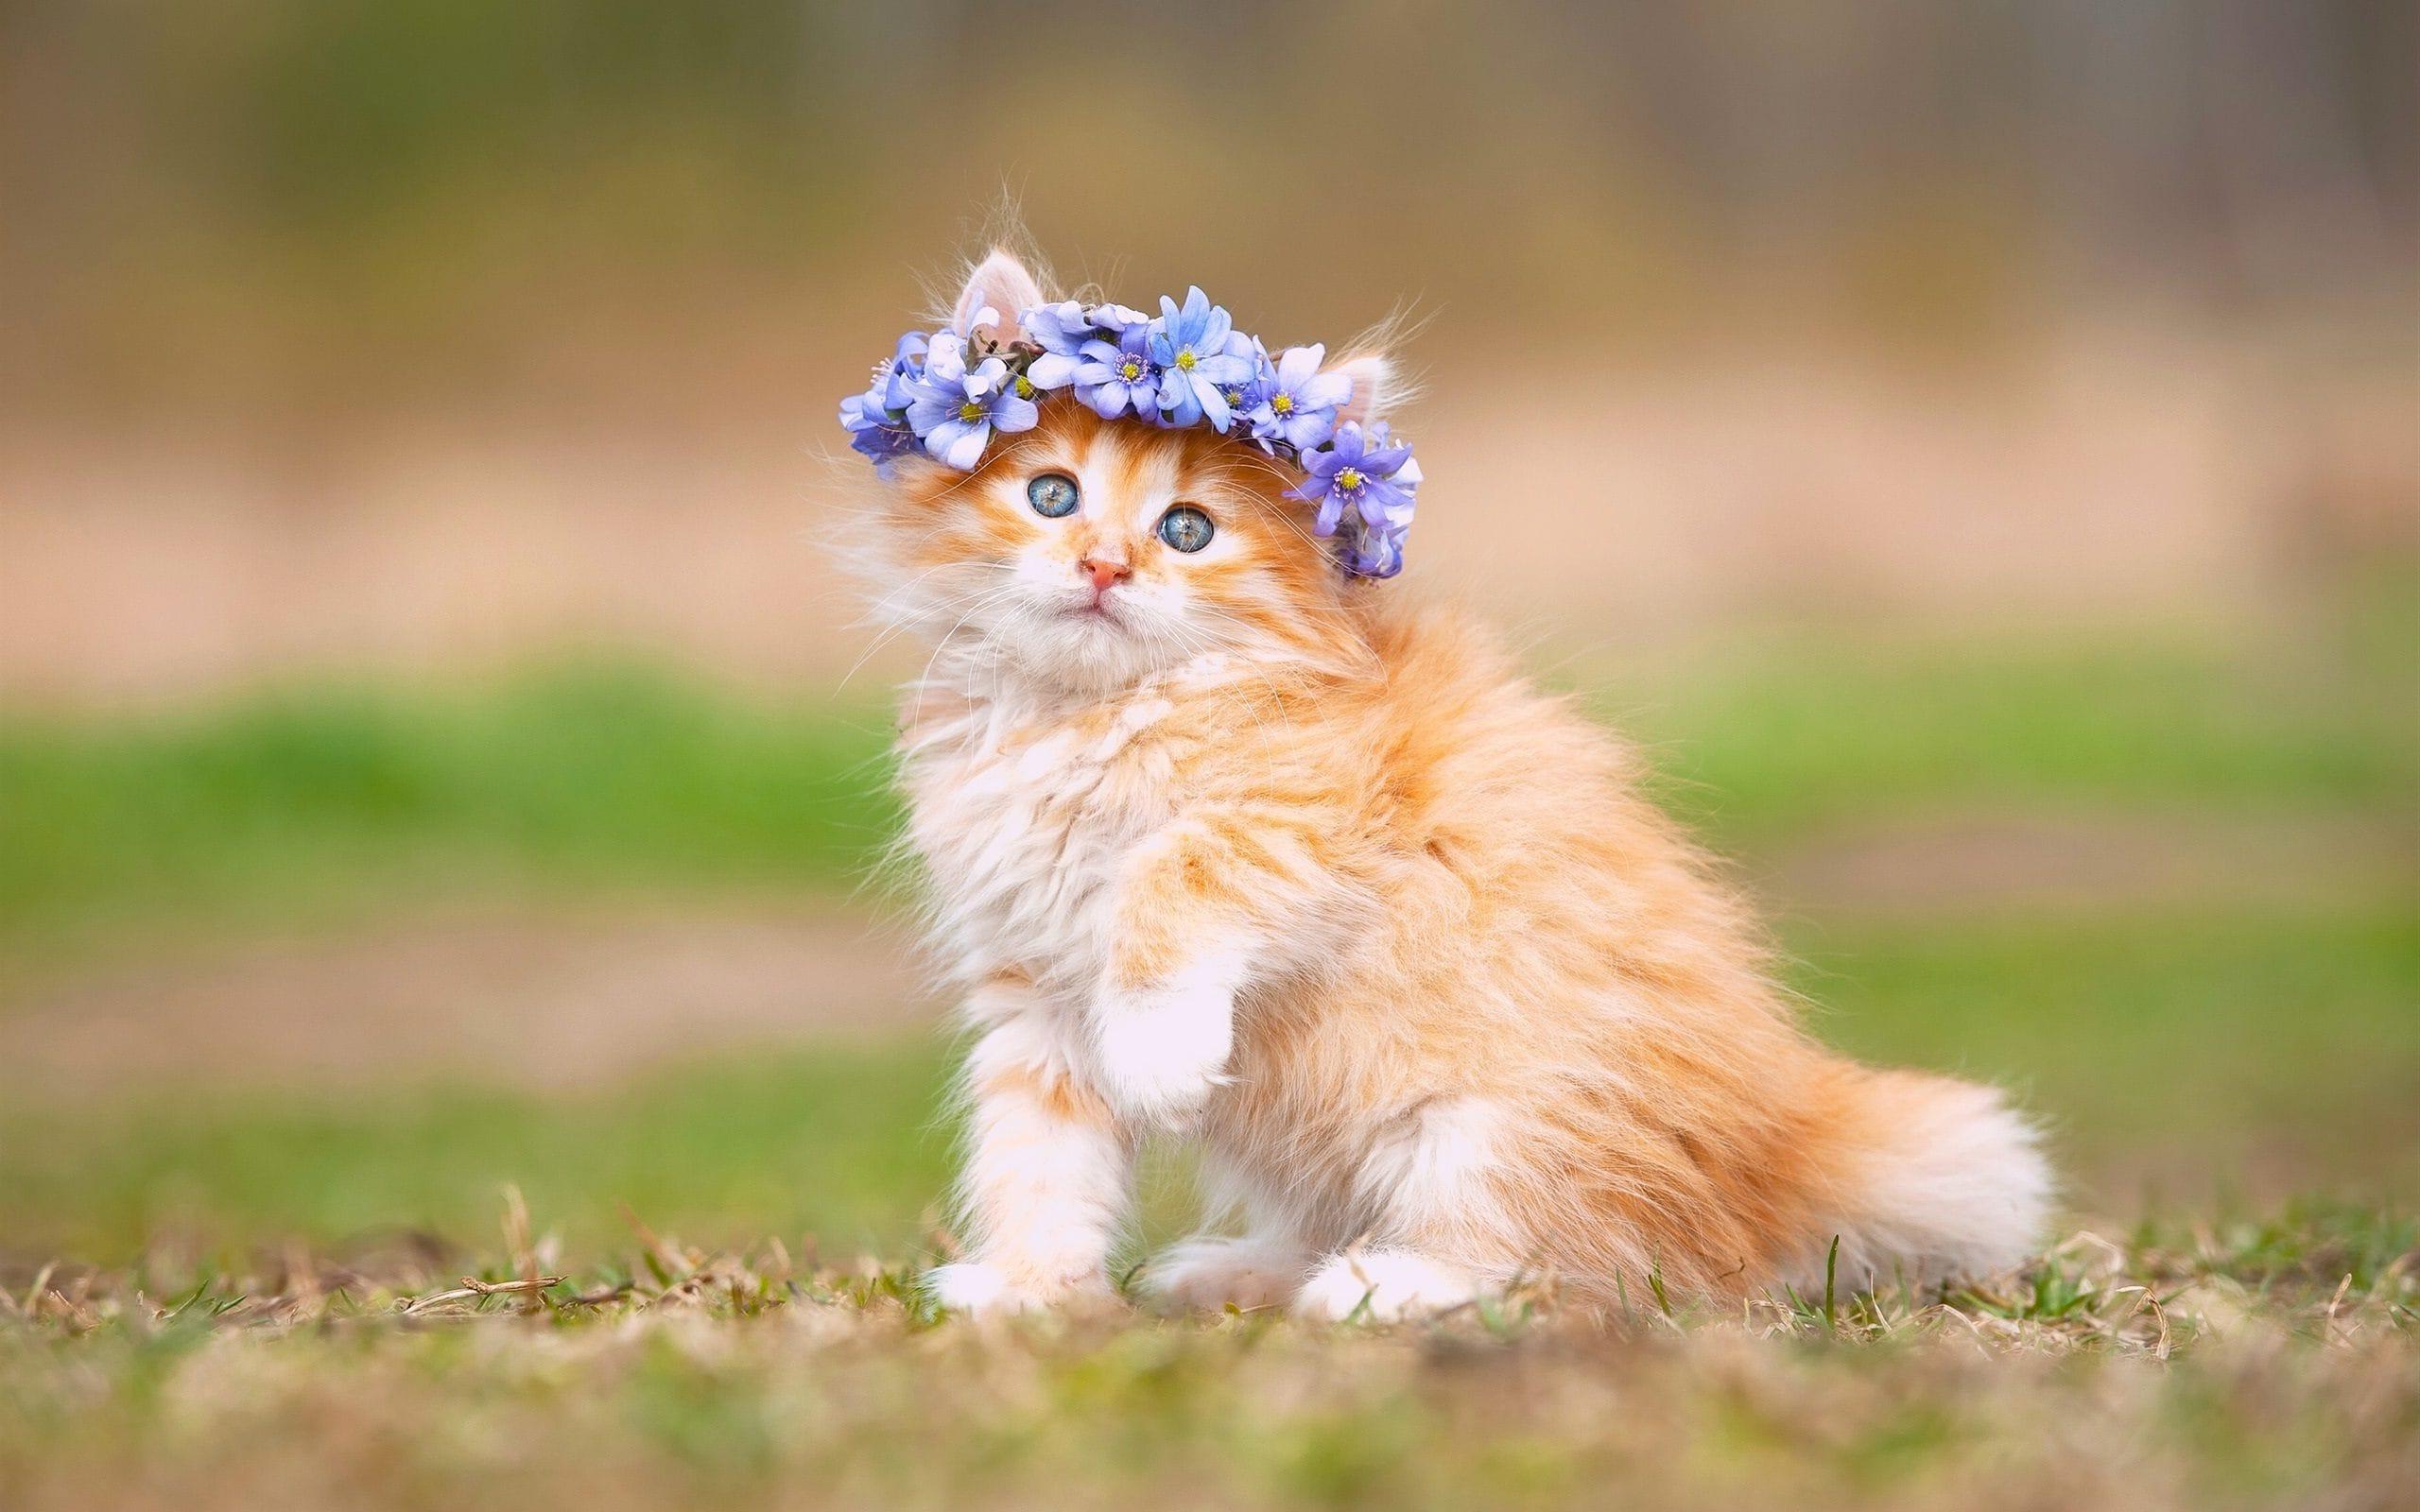 Hình ảnh chú mèo con cực đẹp khi được chủ nhân đeo chiếc vòng hoa trên đầu